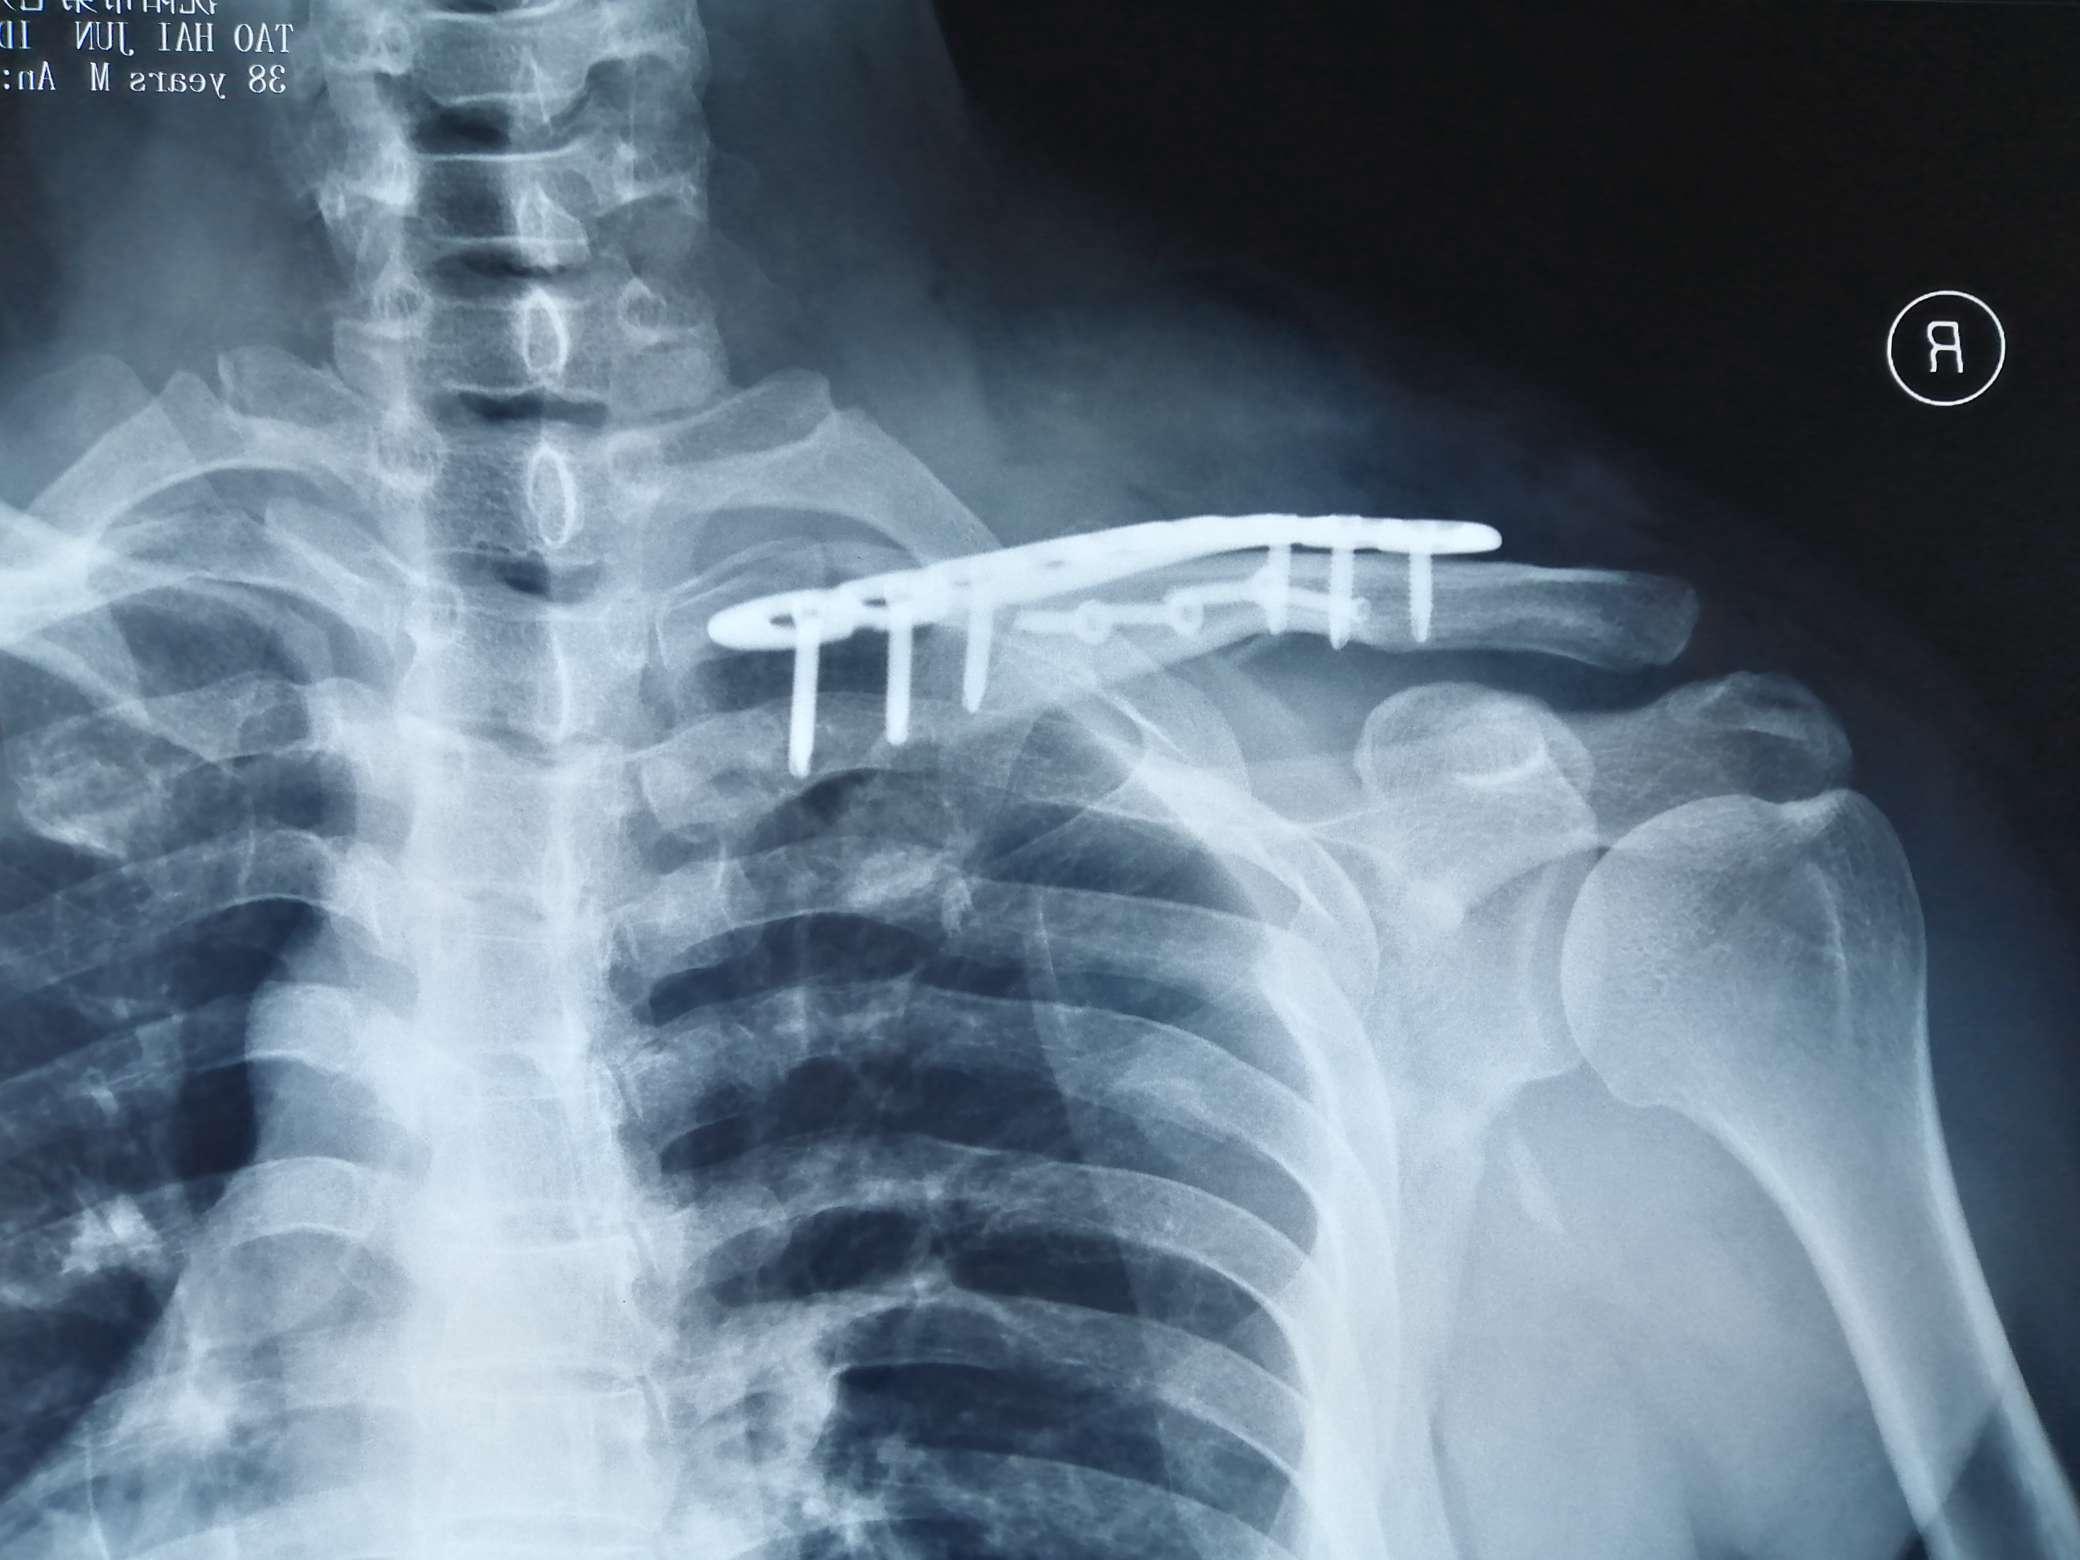 基础必学：肩锁关节脱位诊治要点及常用技术！